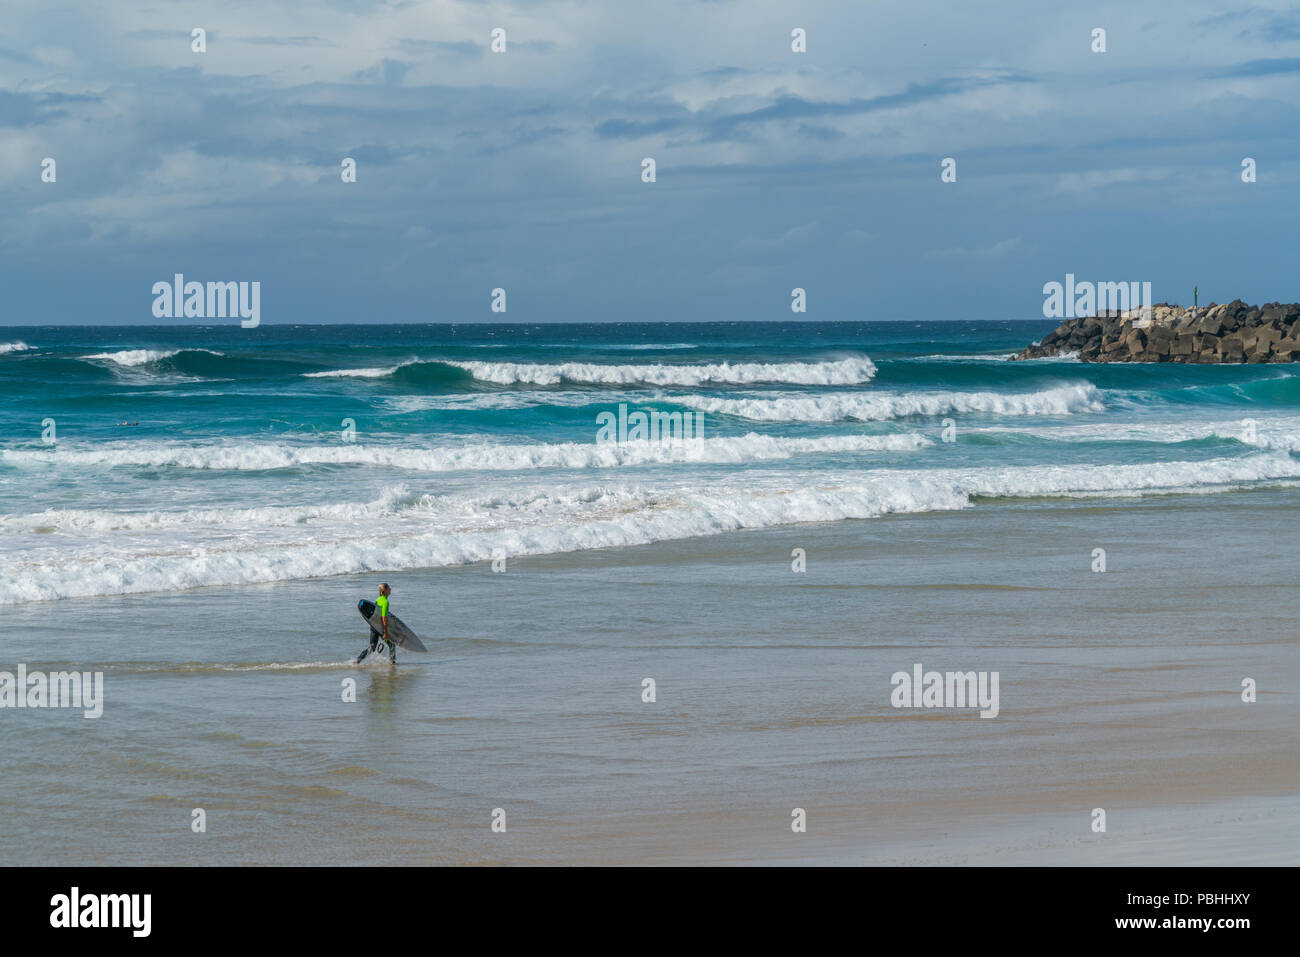 COOLANGATTA, AUSTRALIE - juillet10 2018 ; Large plage de surf avec surfer carrying surfboard le long de plage en face du surf Banque D'Images